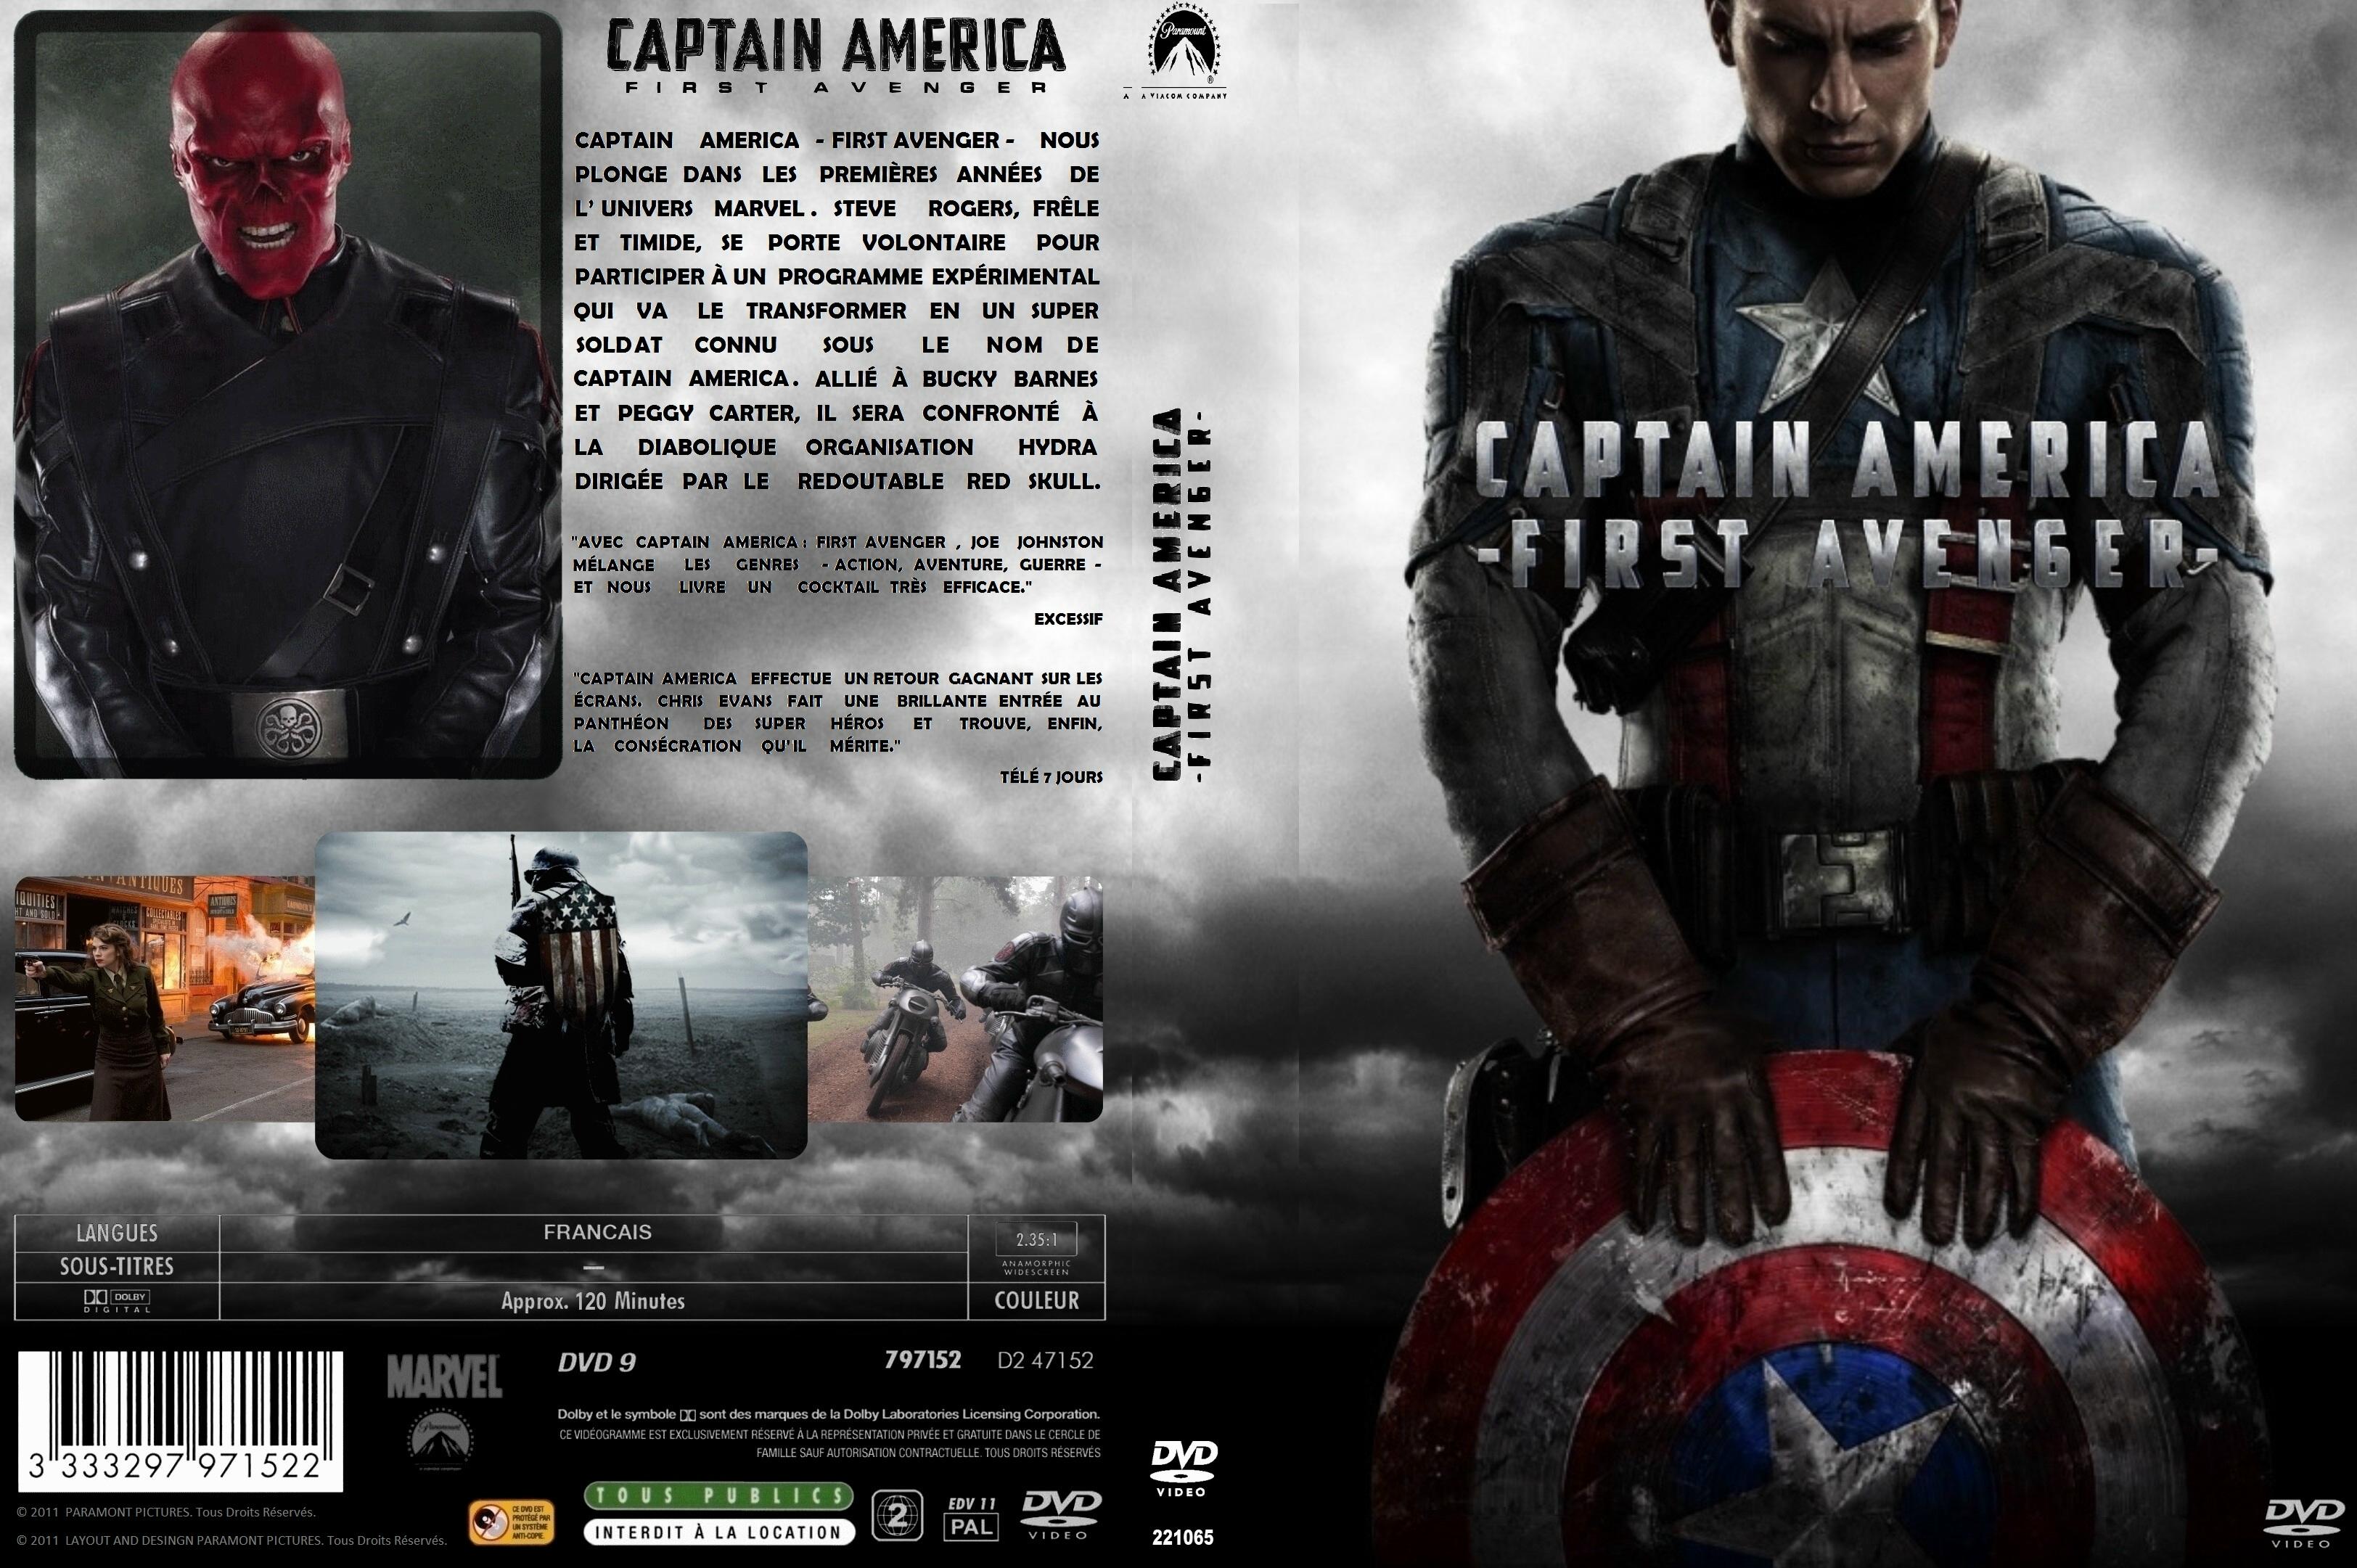 Jaquette DVD Captain america custom - SLIM